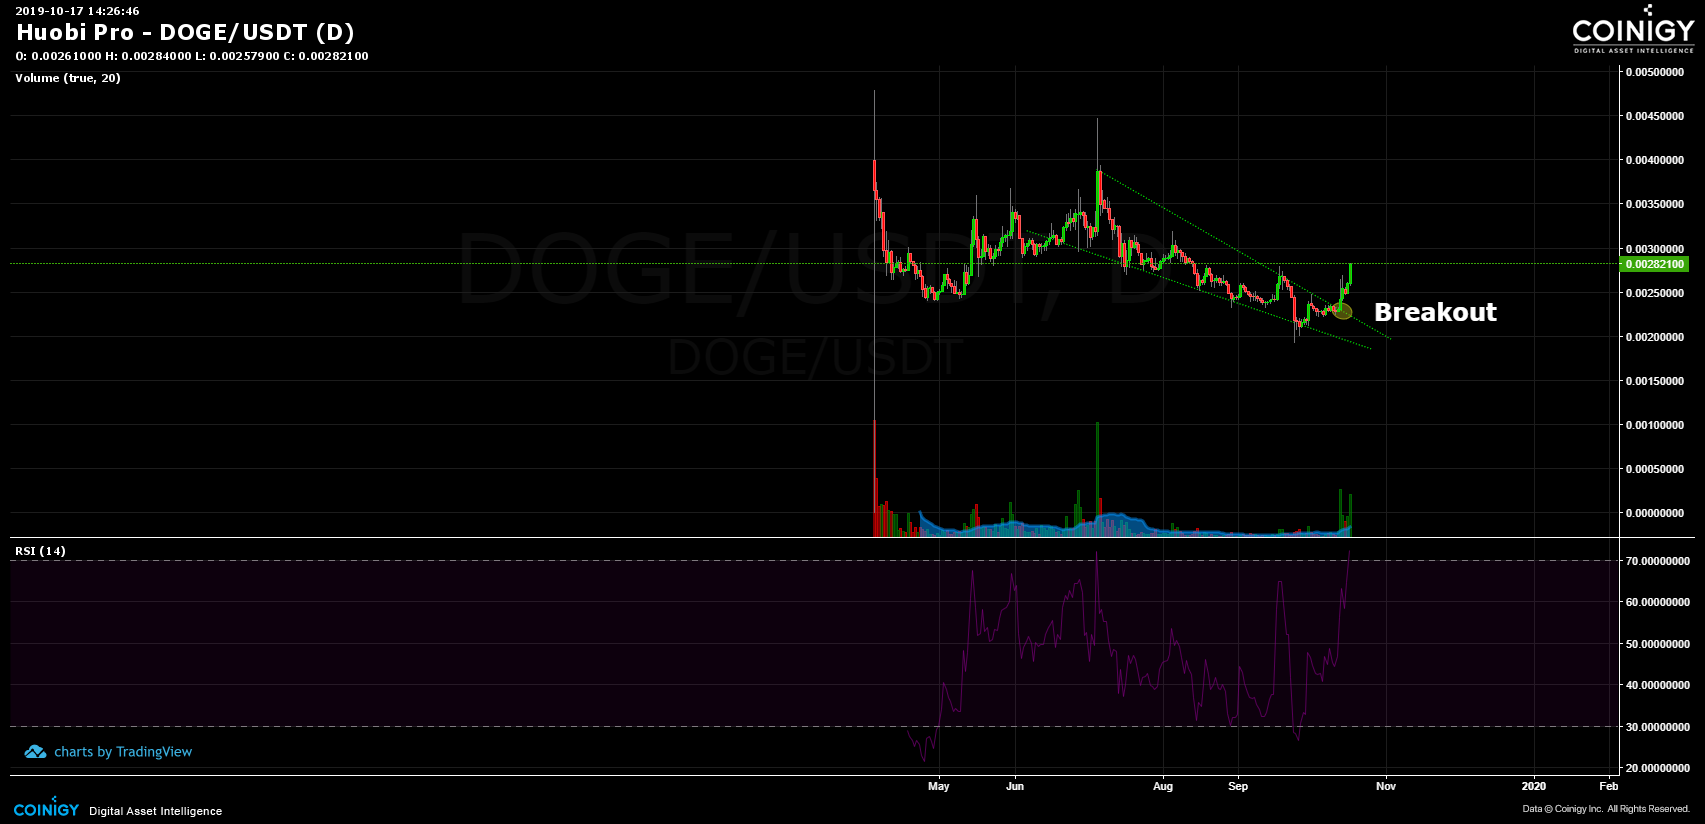 Huobi Pro DOGE/USDT Chart - Published on Coinigy.com on ...